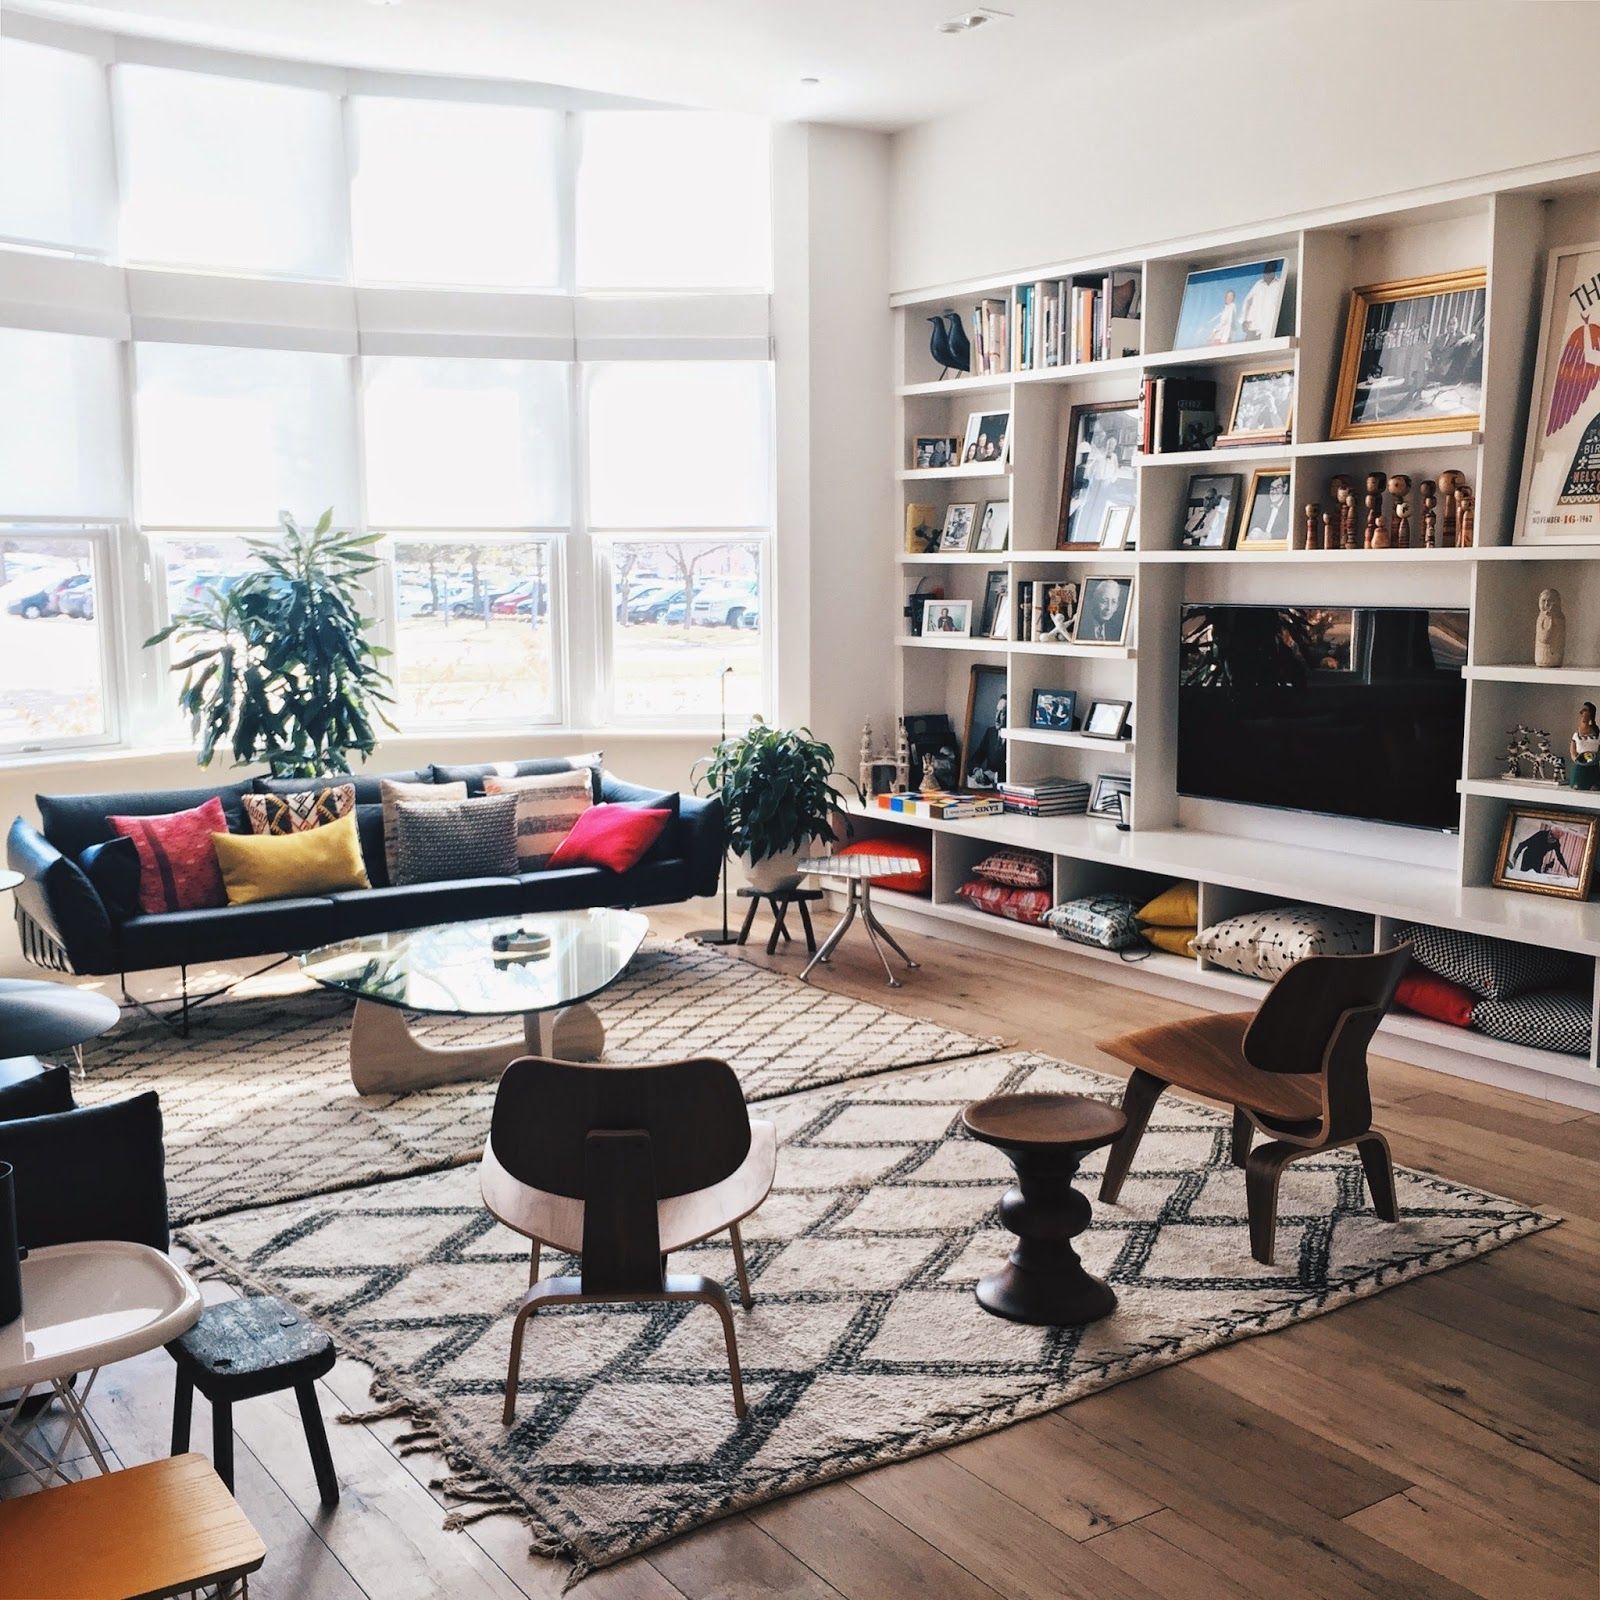 Ambiente Eames: sala com sofás, cadeiras e estante com livros.